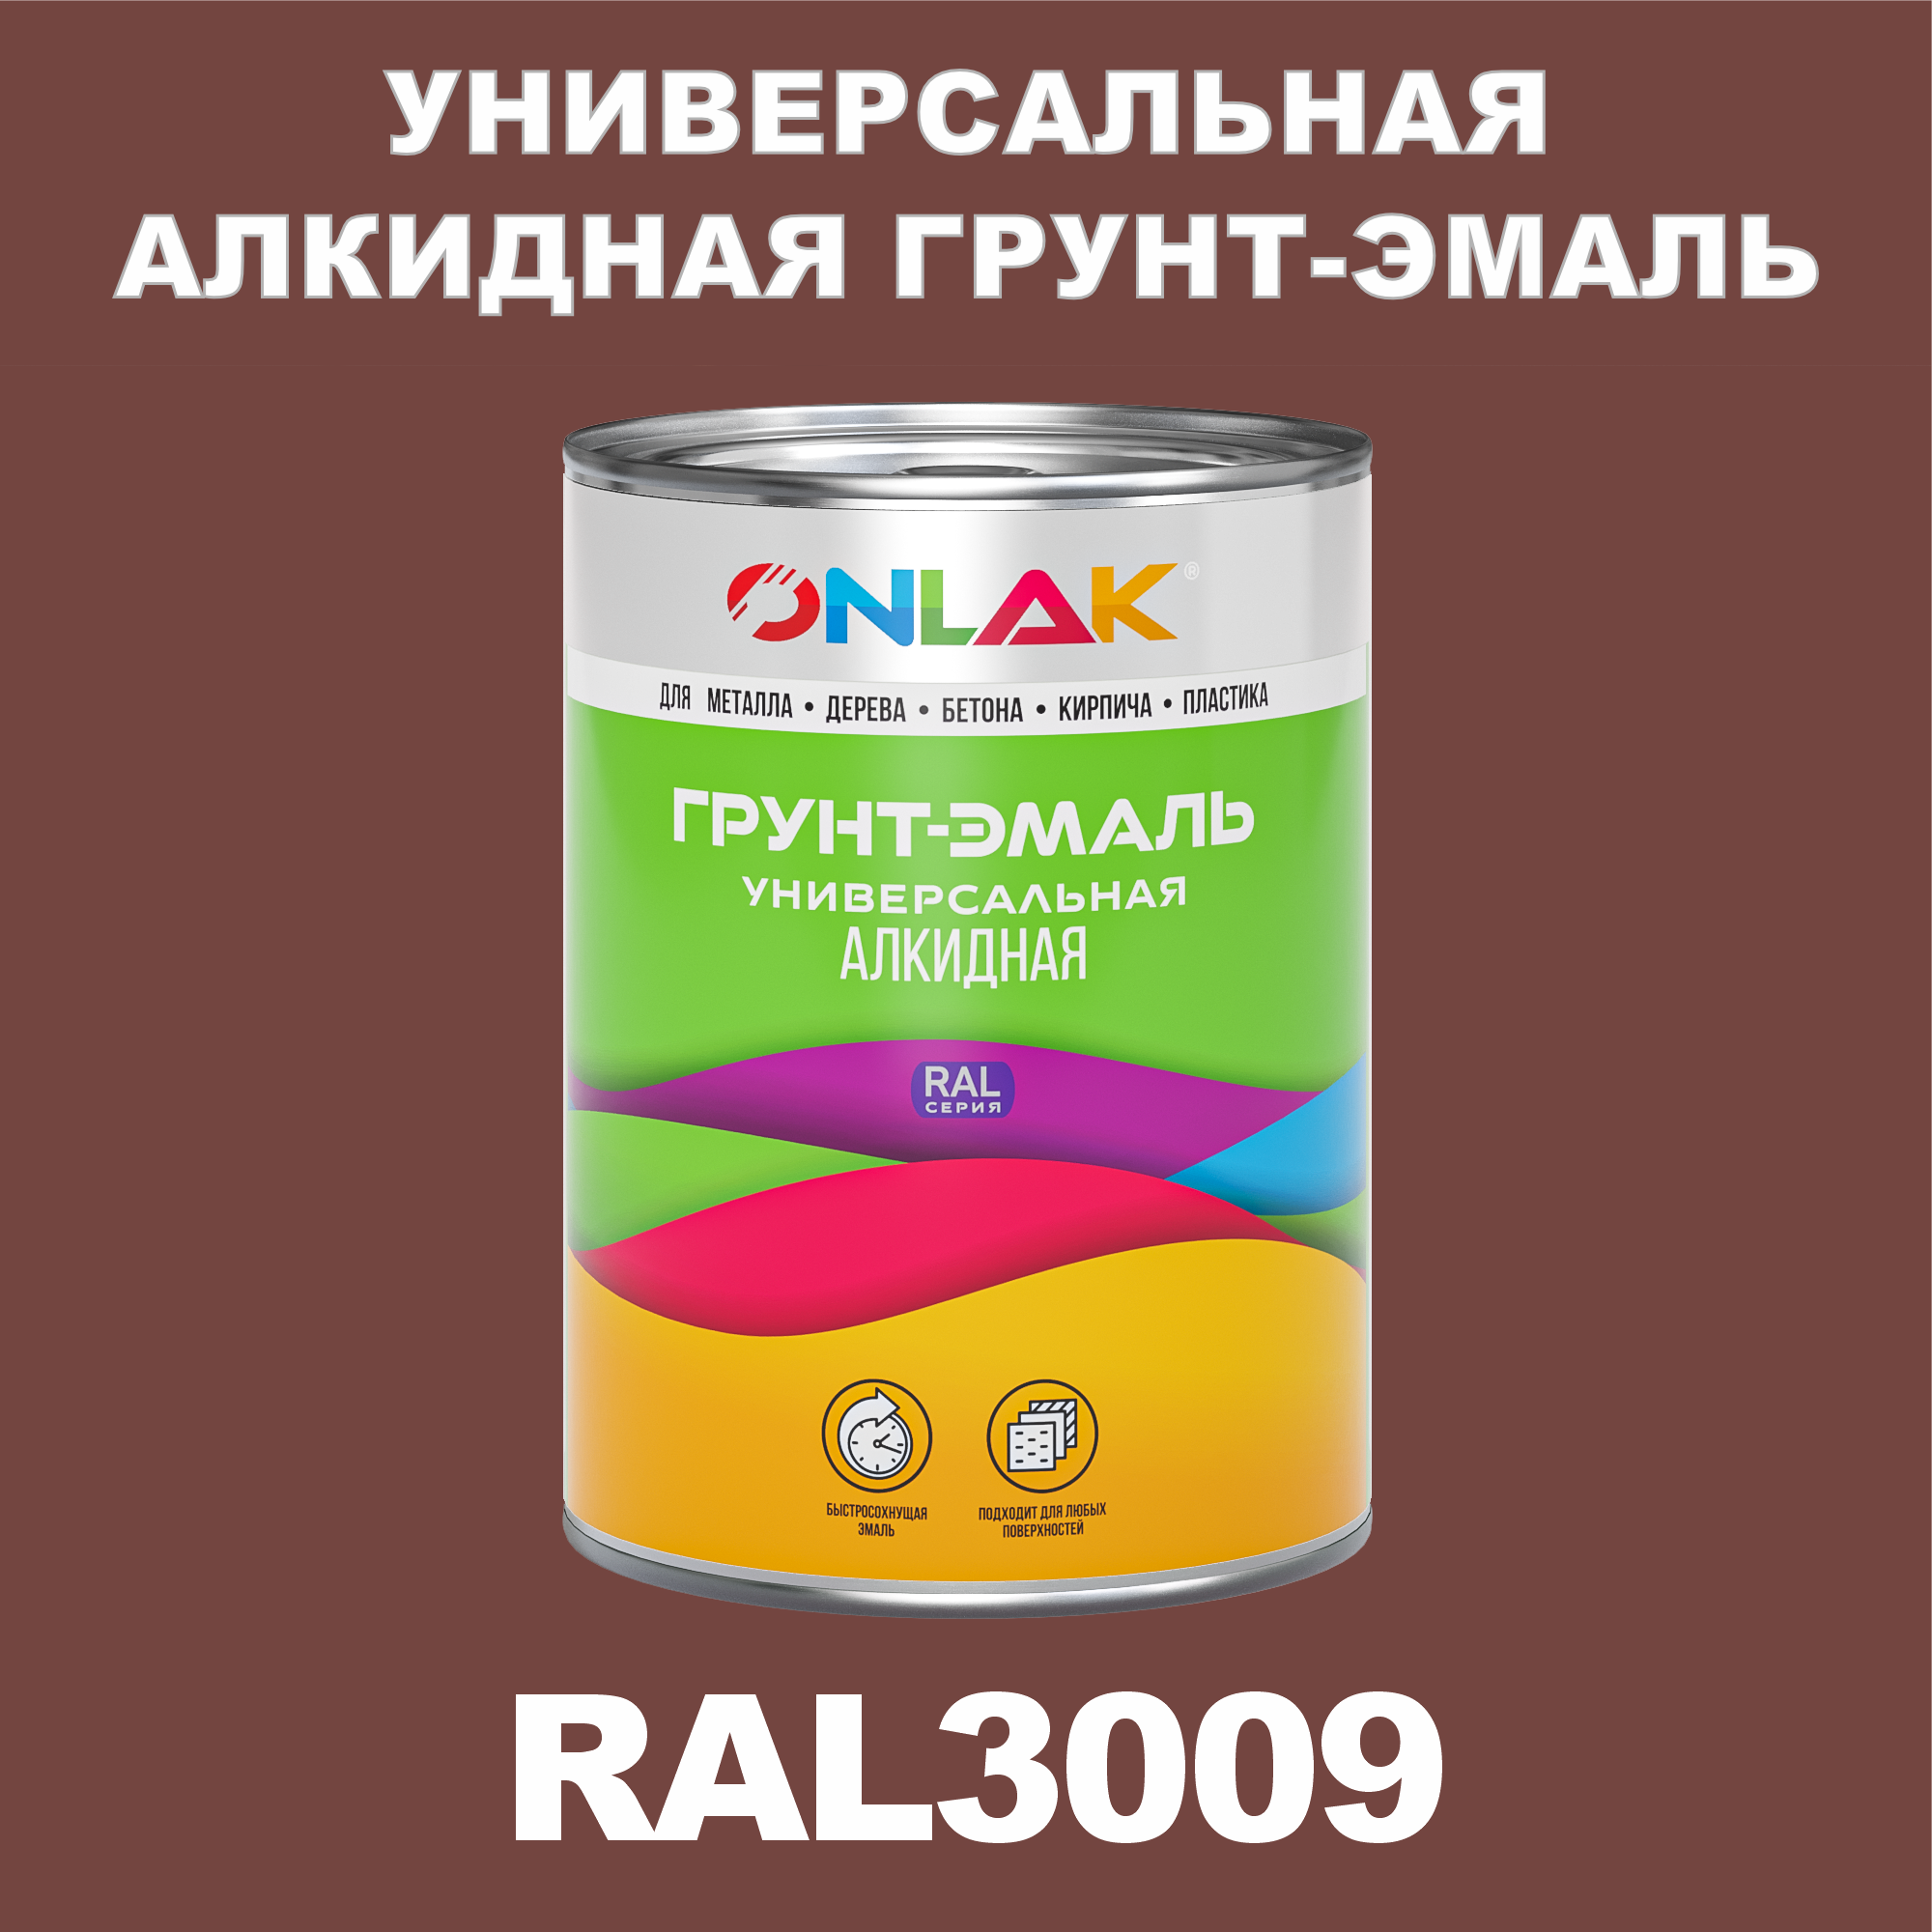 Грунт-эмаль ONLAK 1К RAL3009 антикоррозионная алкидная по металлу по ржавчине 1 кг